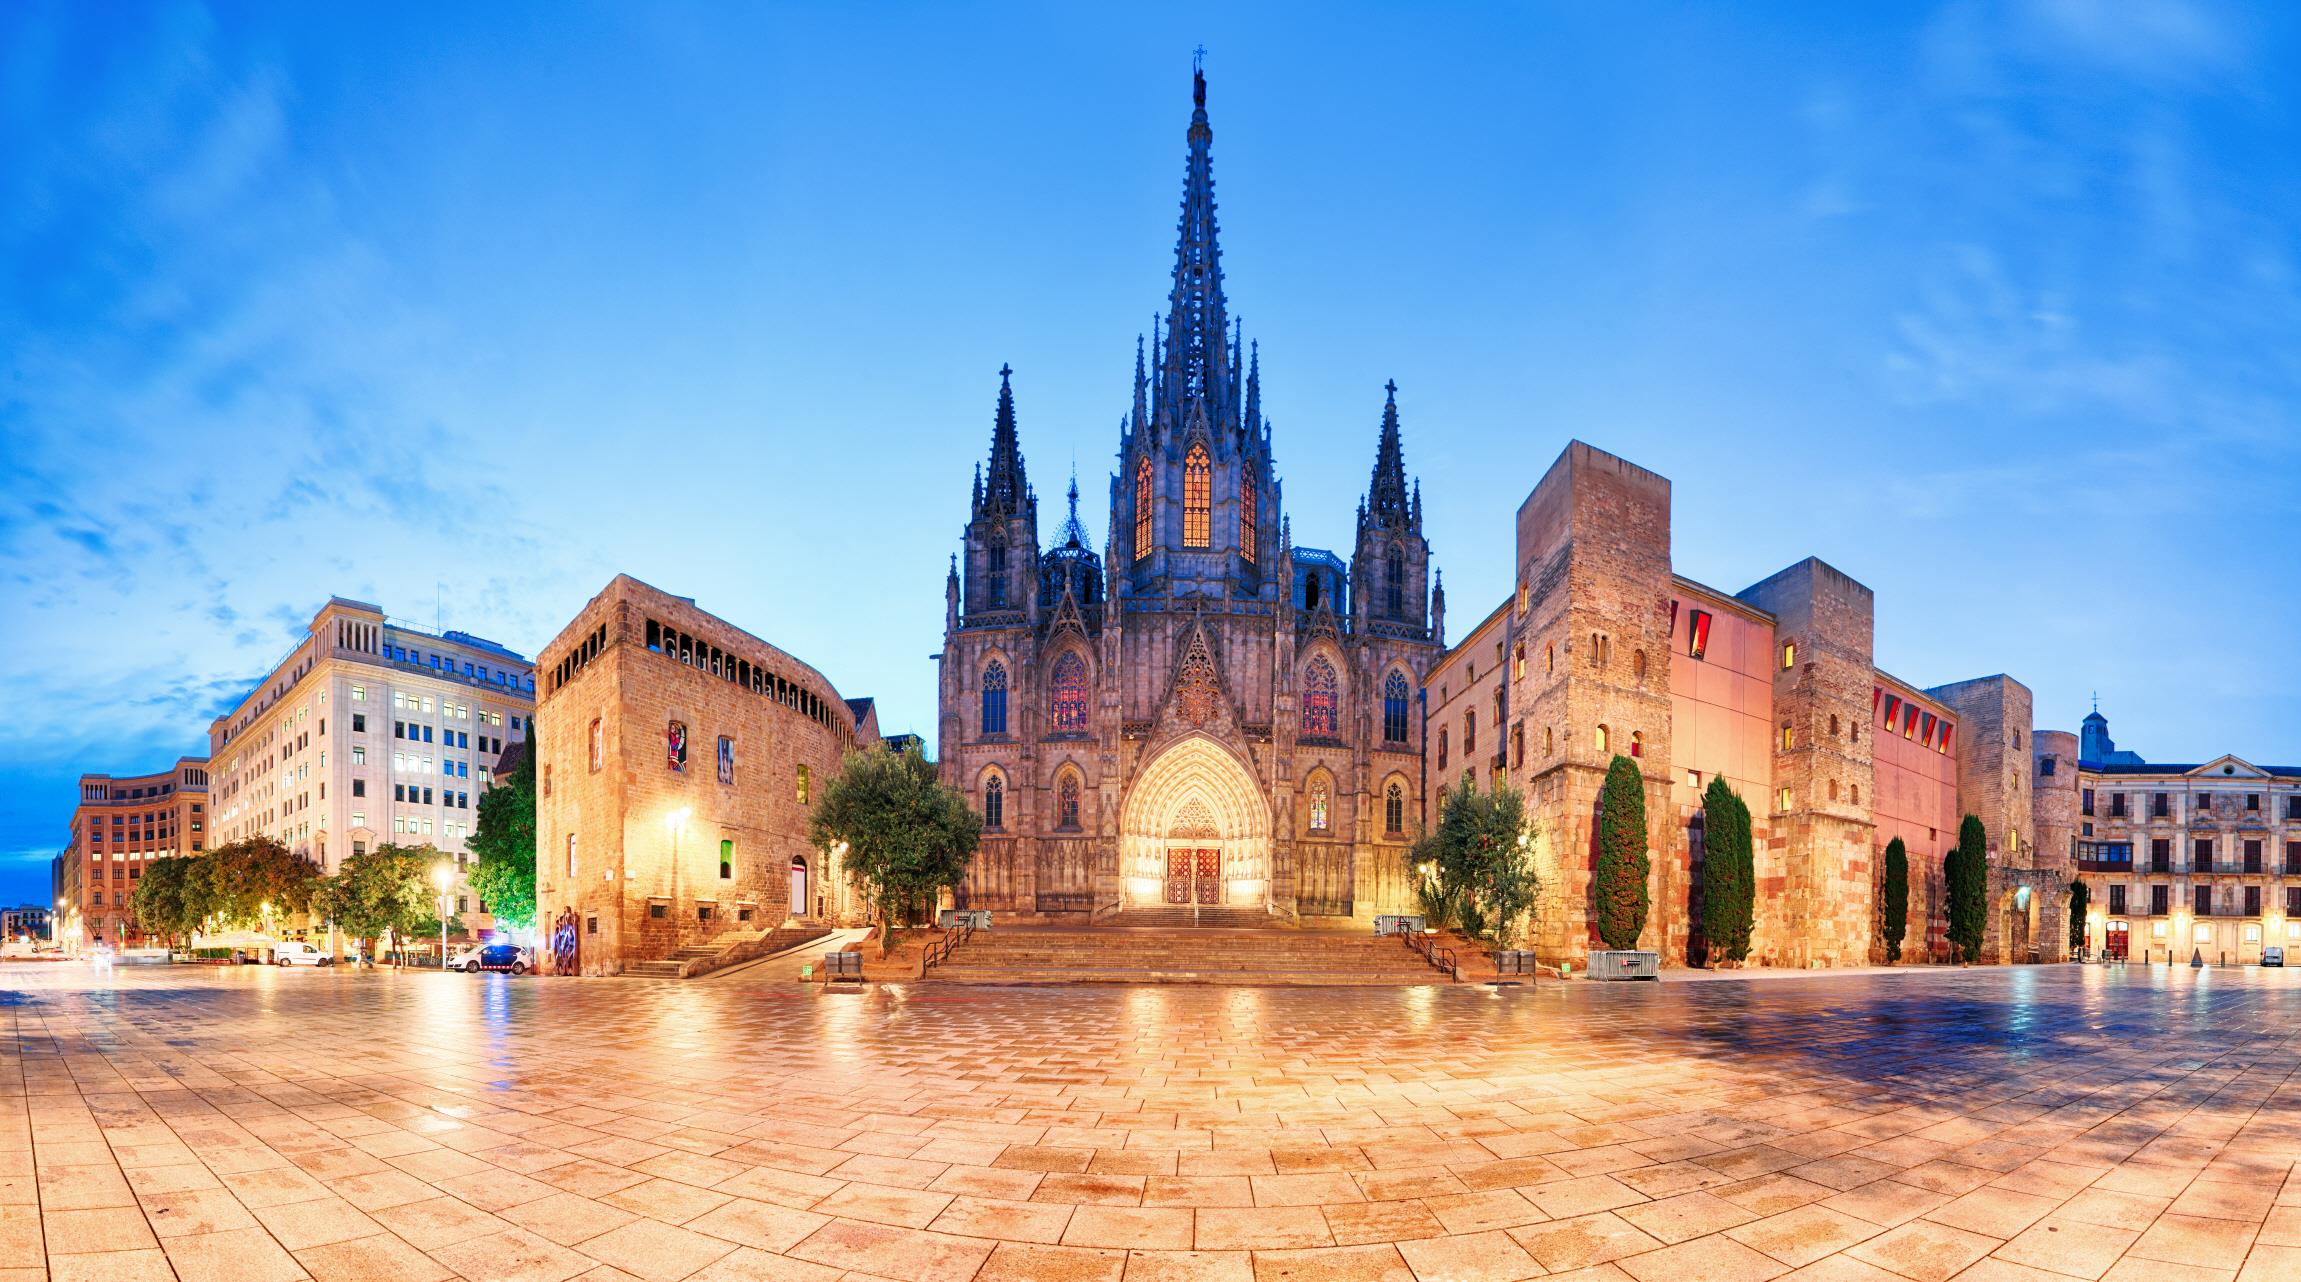 바르셀로나 대성당 (Cathedral of Barcelona)